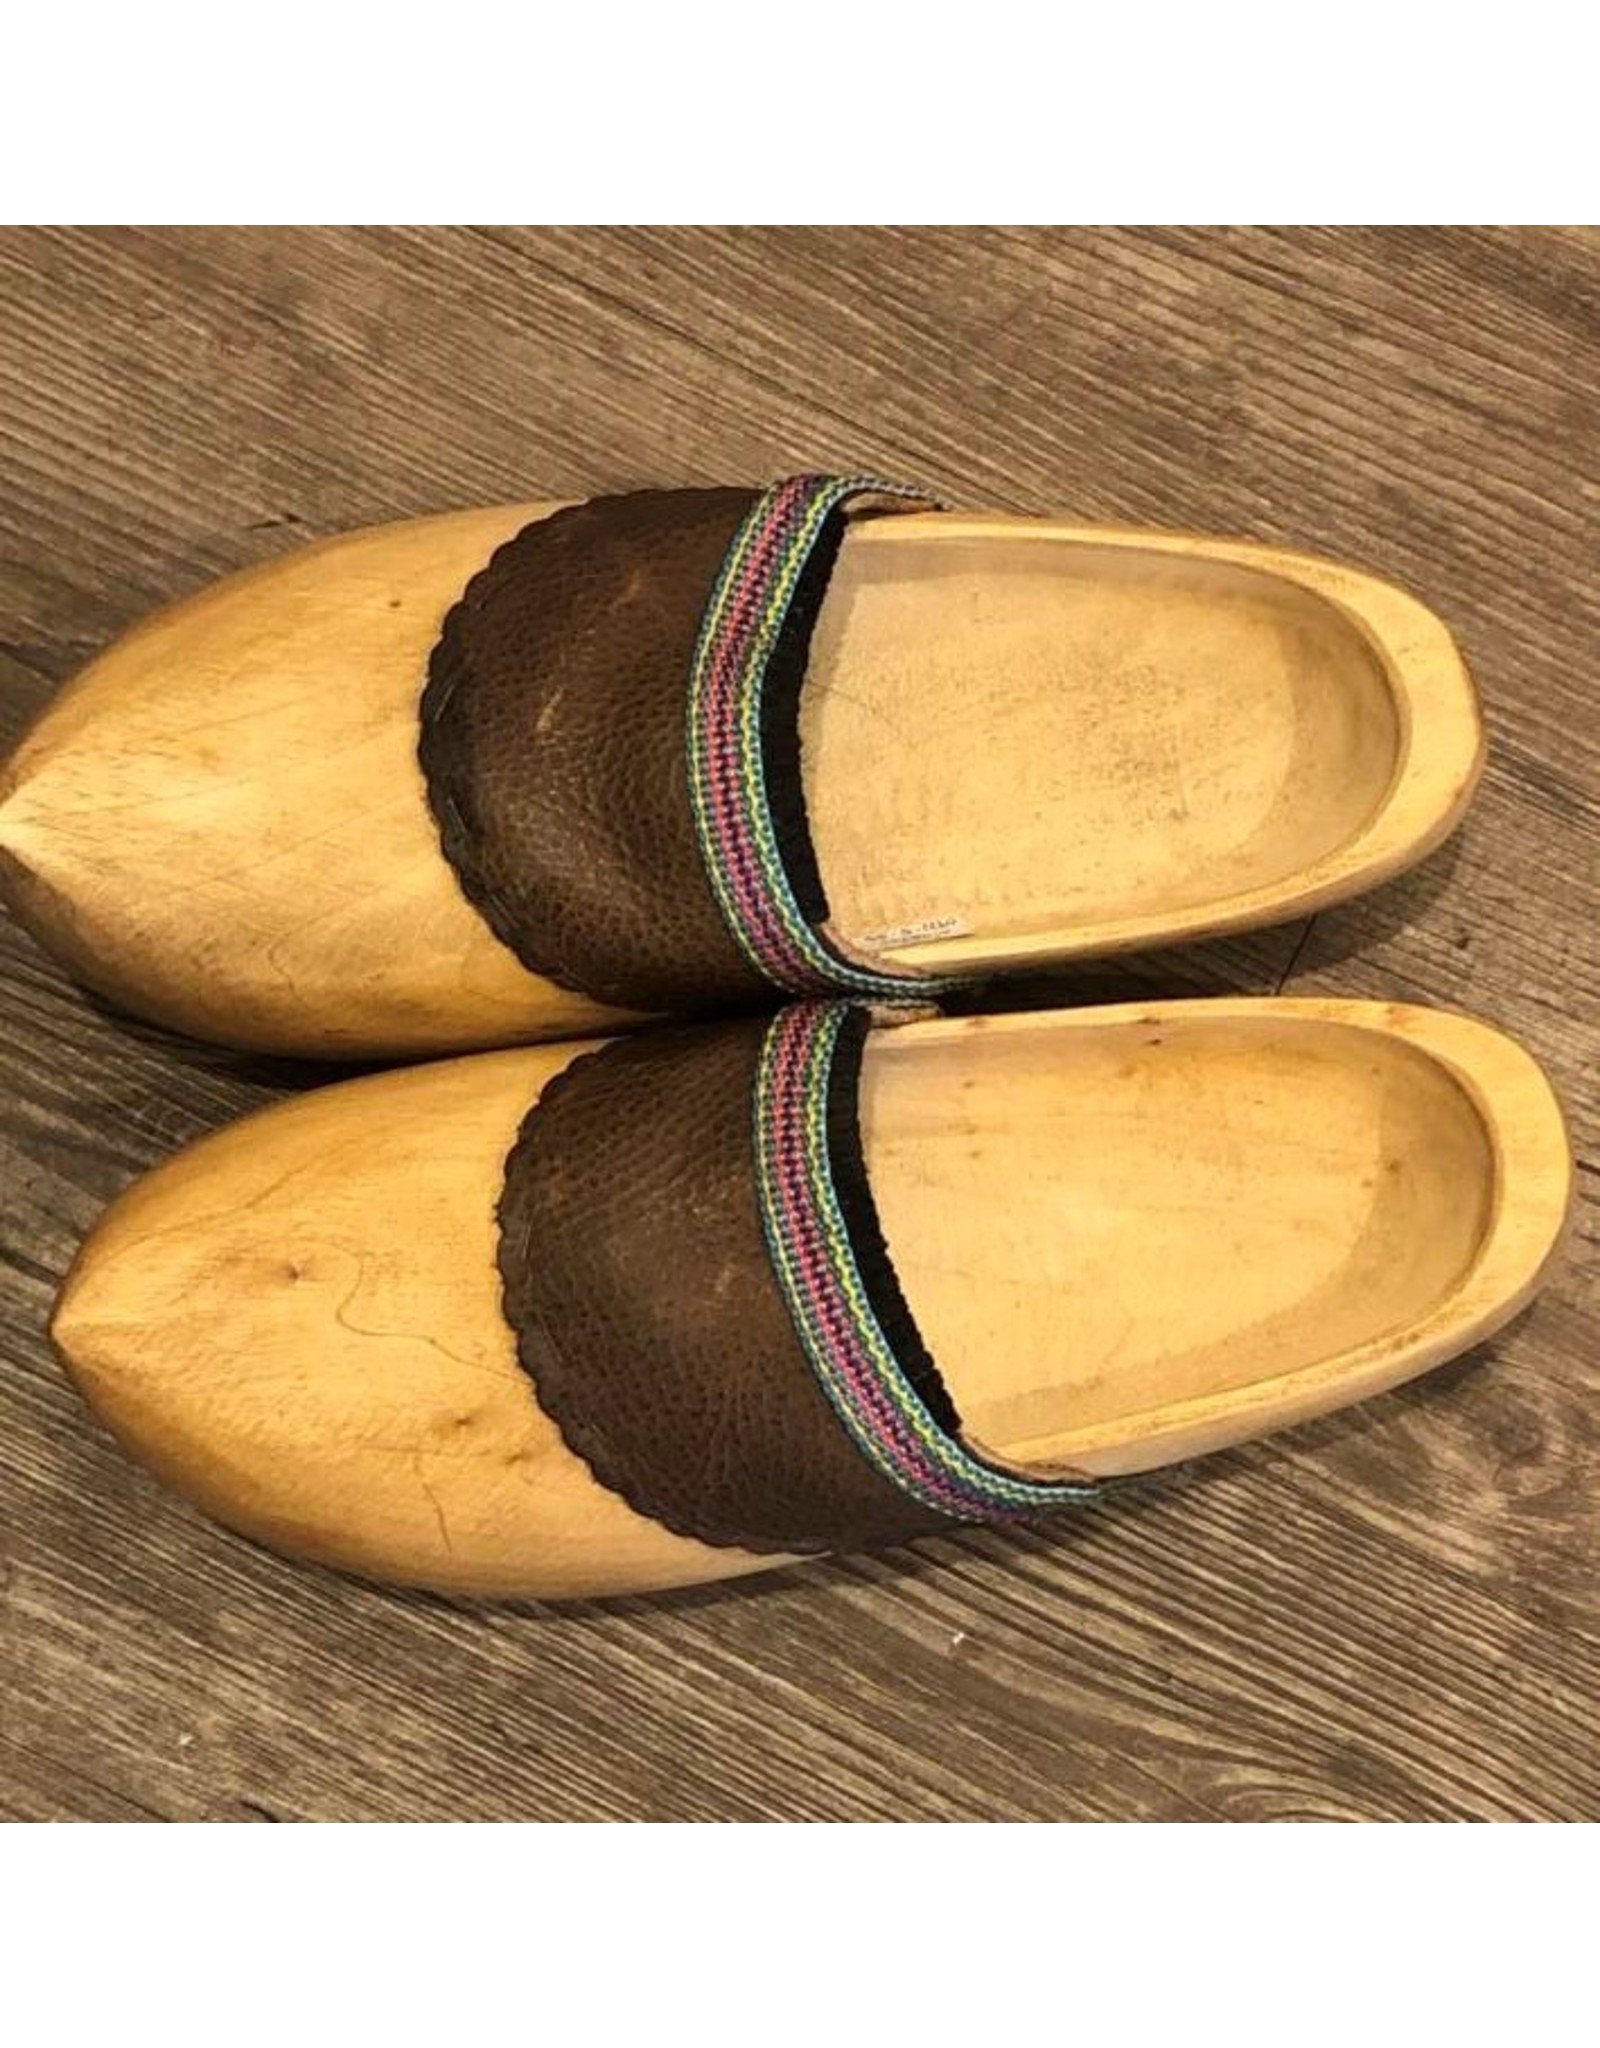 Dutch wooden clogs